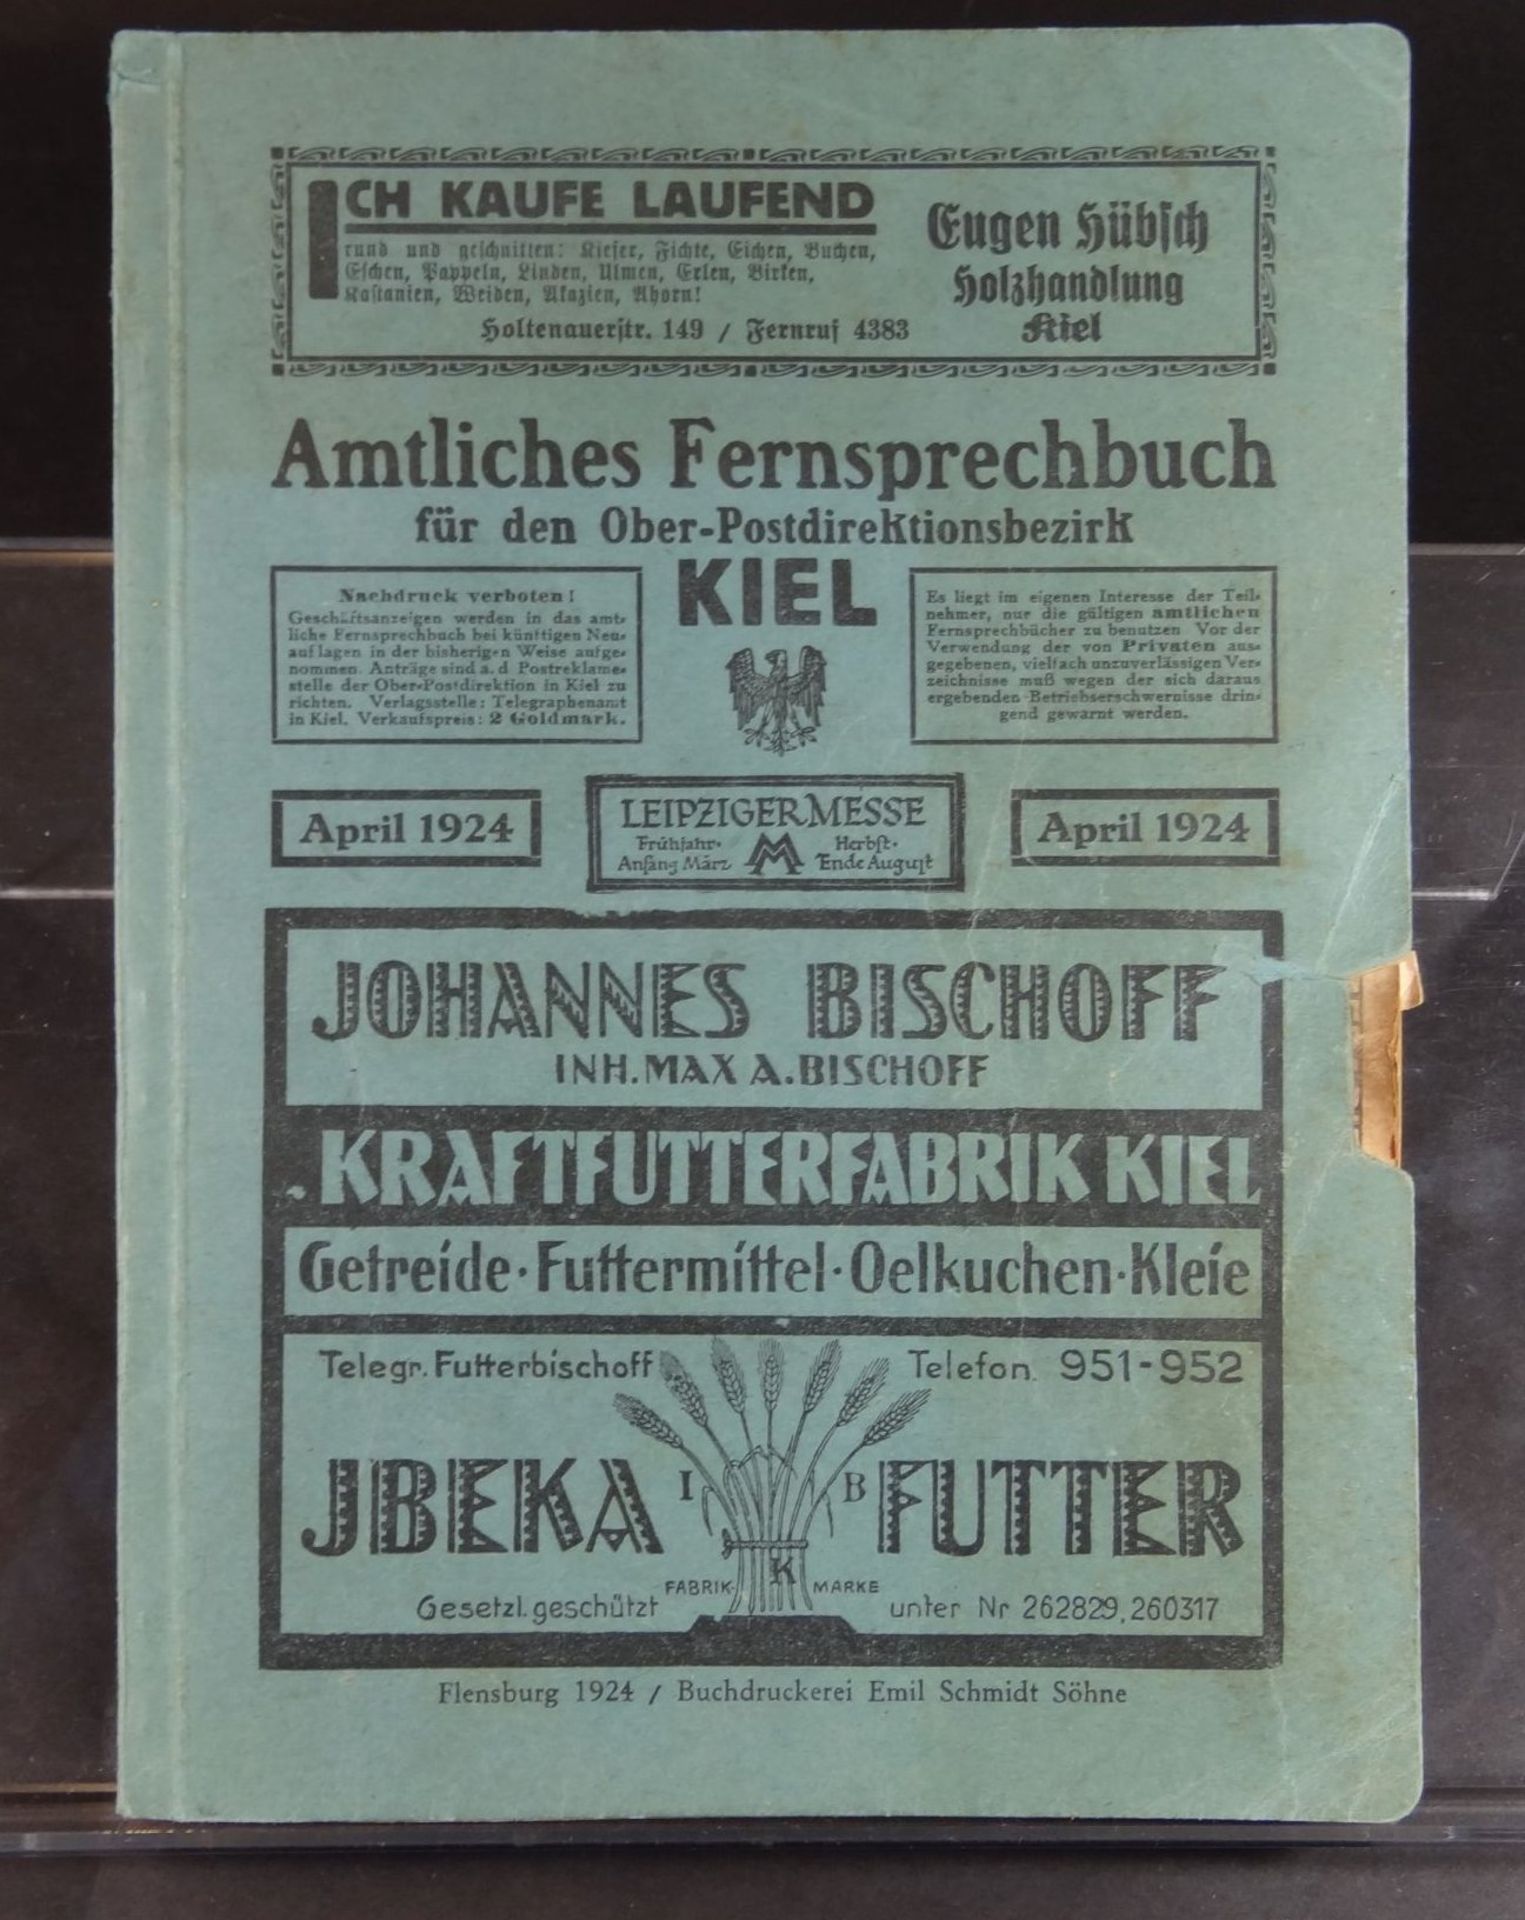 Amtliches Fernsprechbuch für den Ober-Direktions-Postbezirk Kiel, 192<